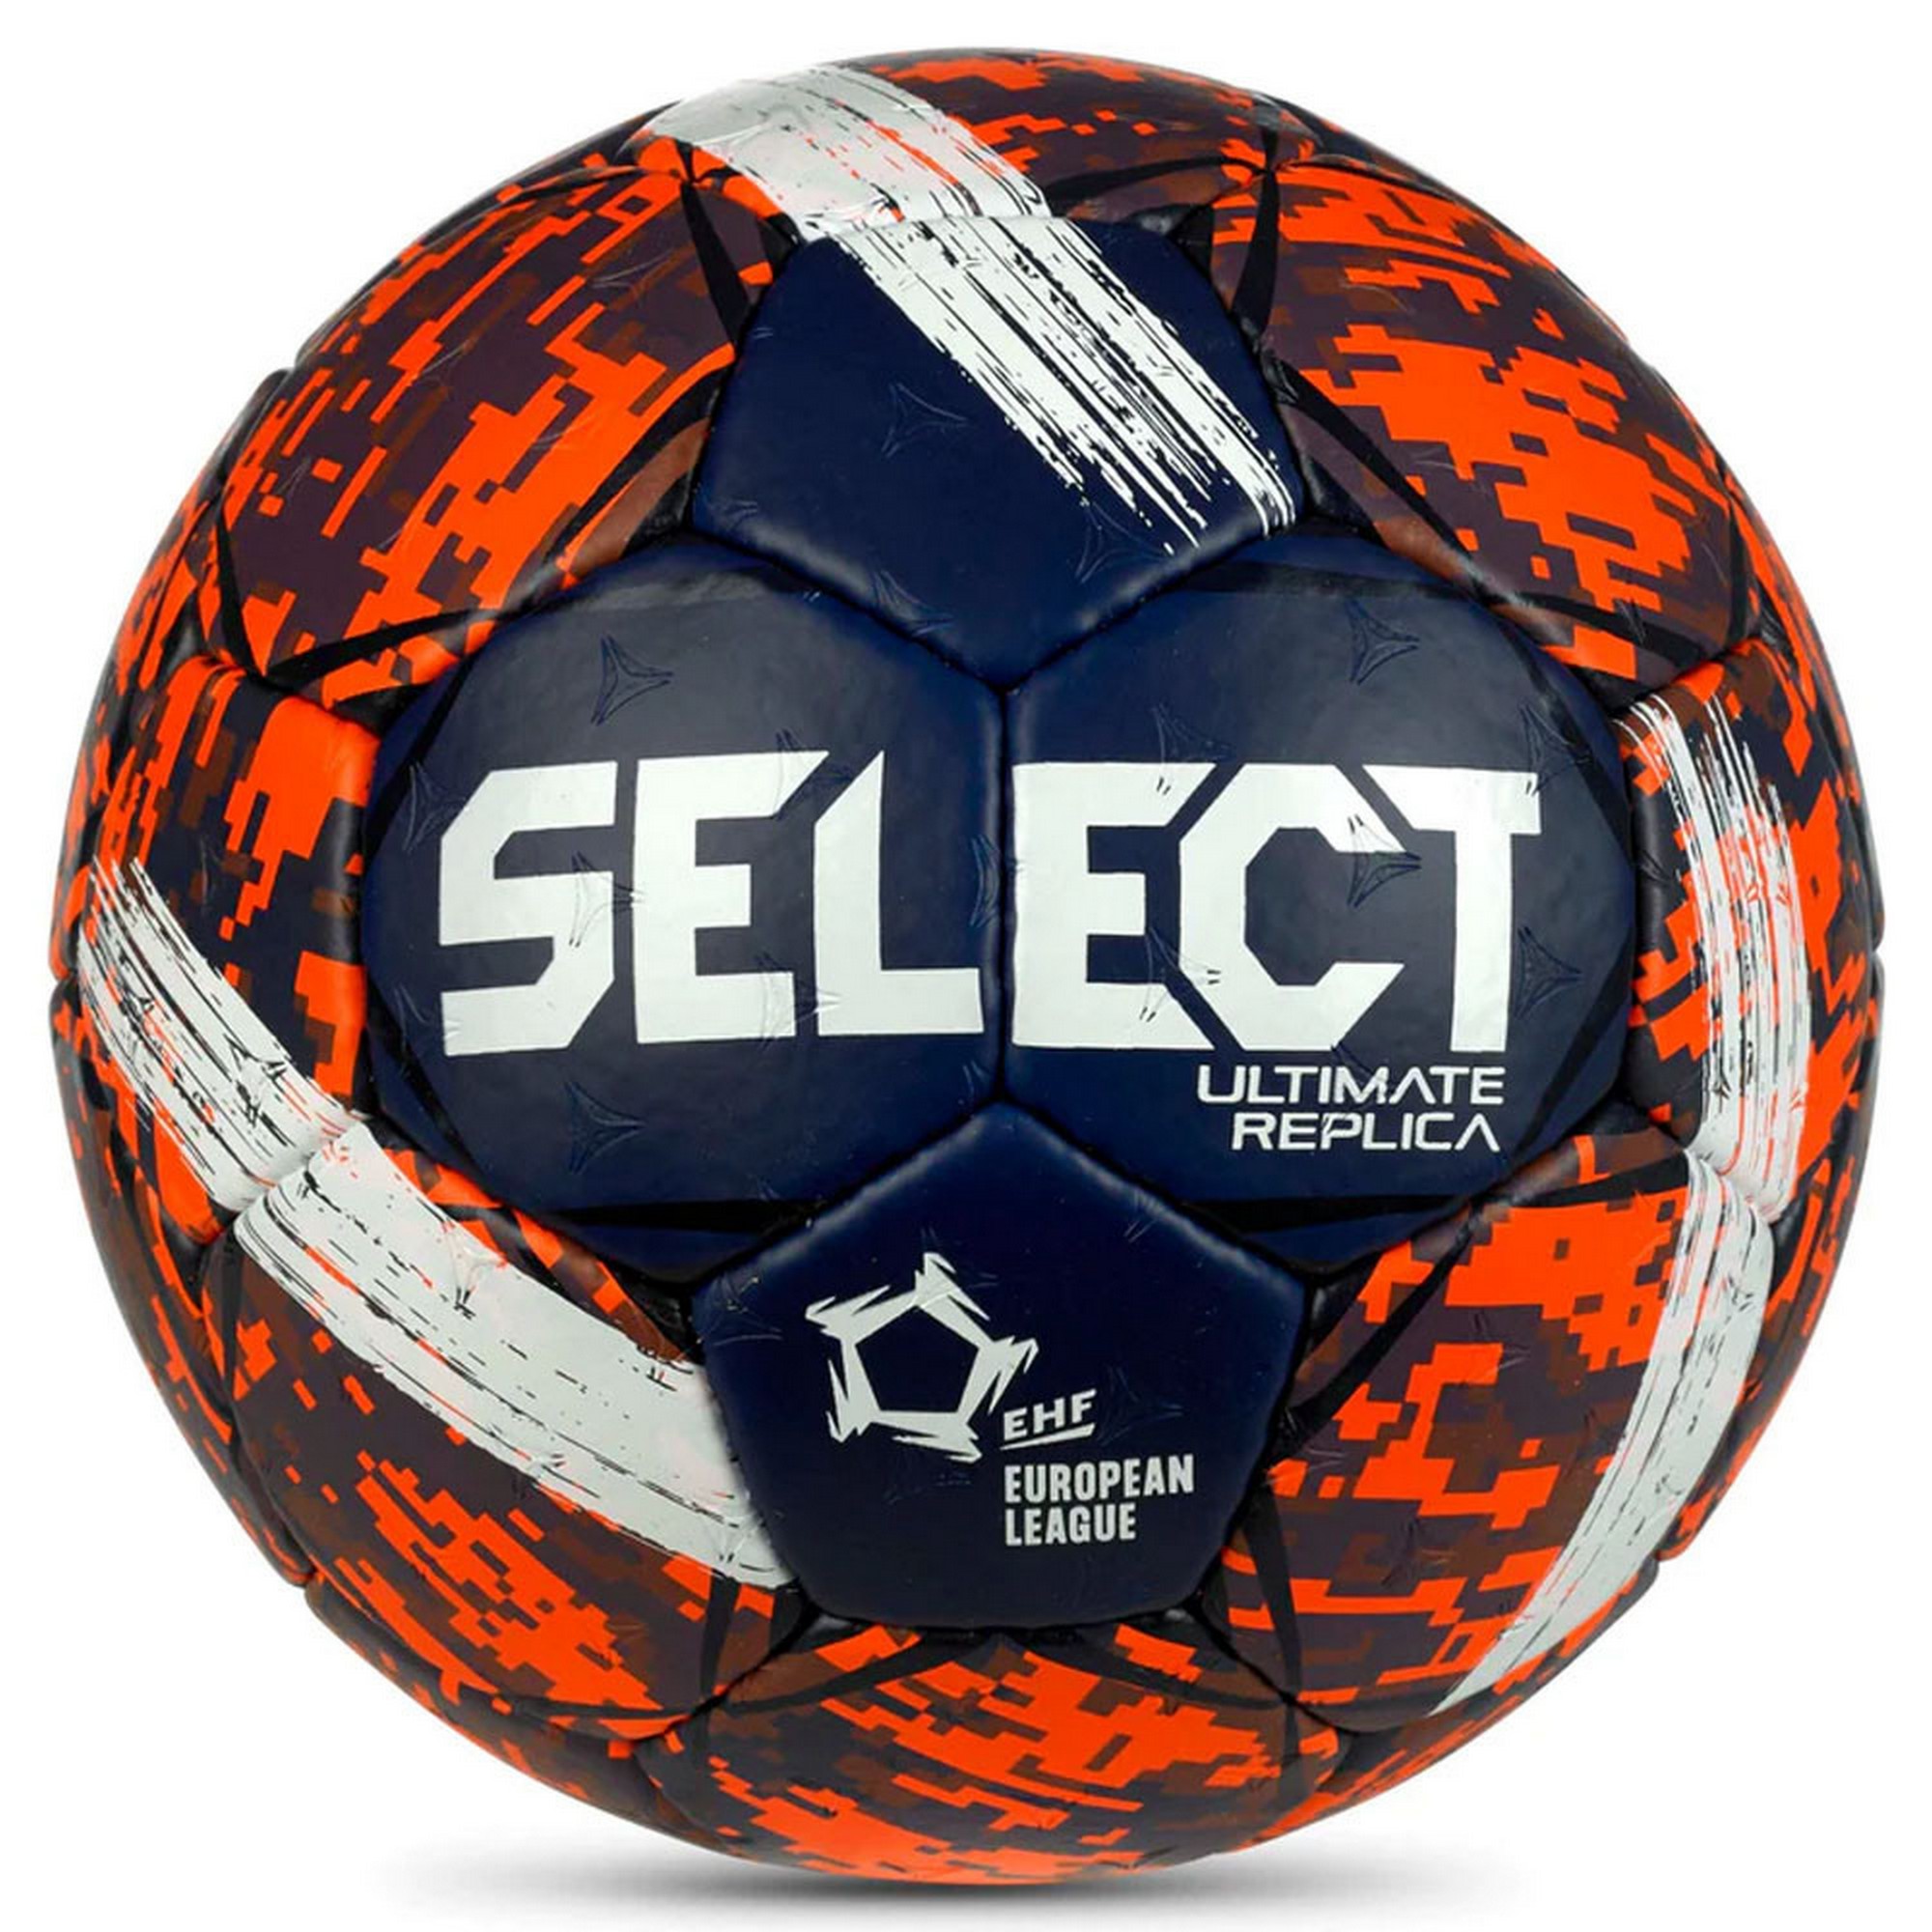 Мяч гандбольный Select Ultimate Replica v23 3570847495 EHF Appr, р.0